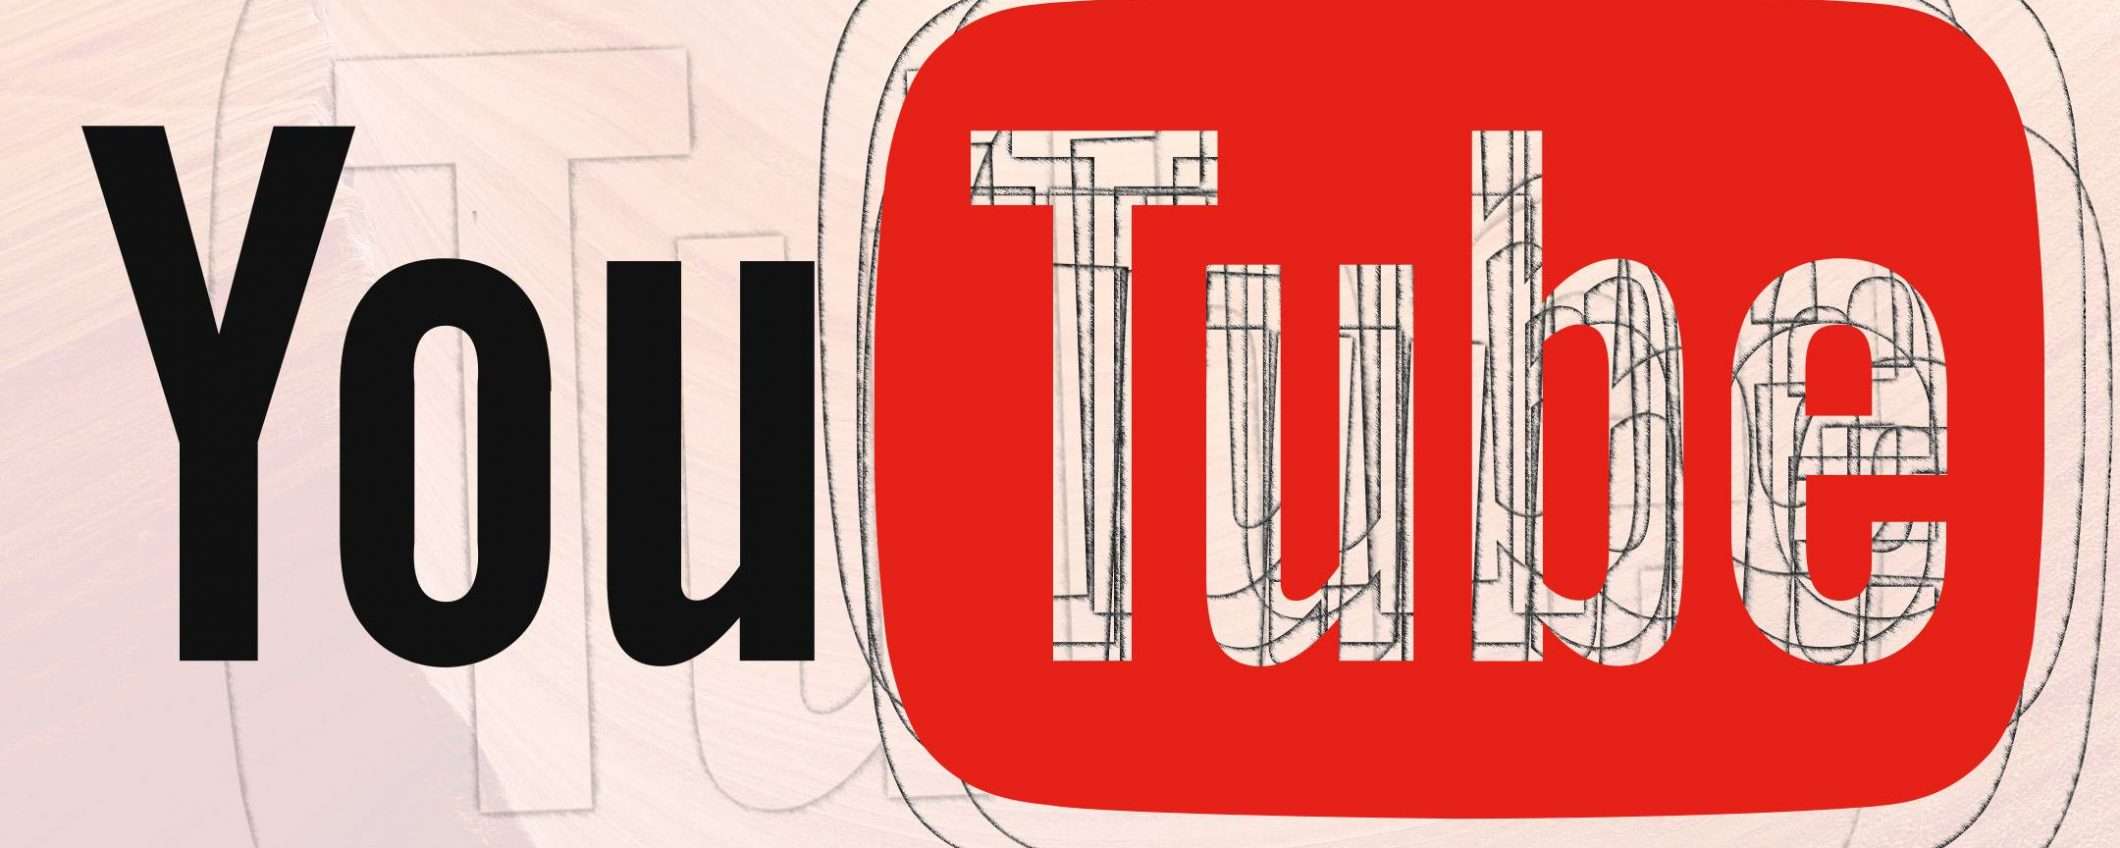 La lotta di YouTube contro l'incitamento all'odio